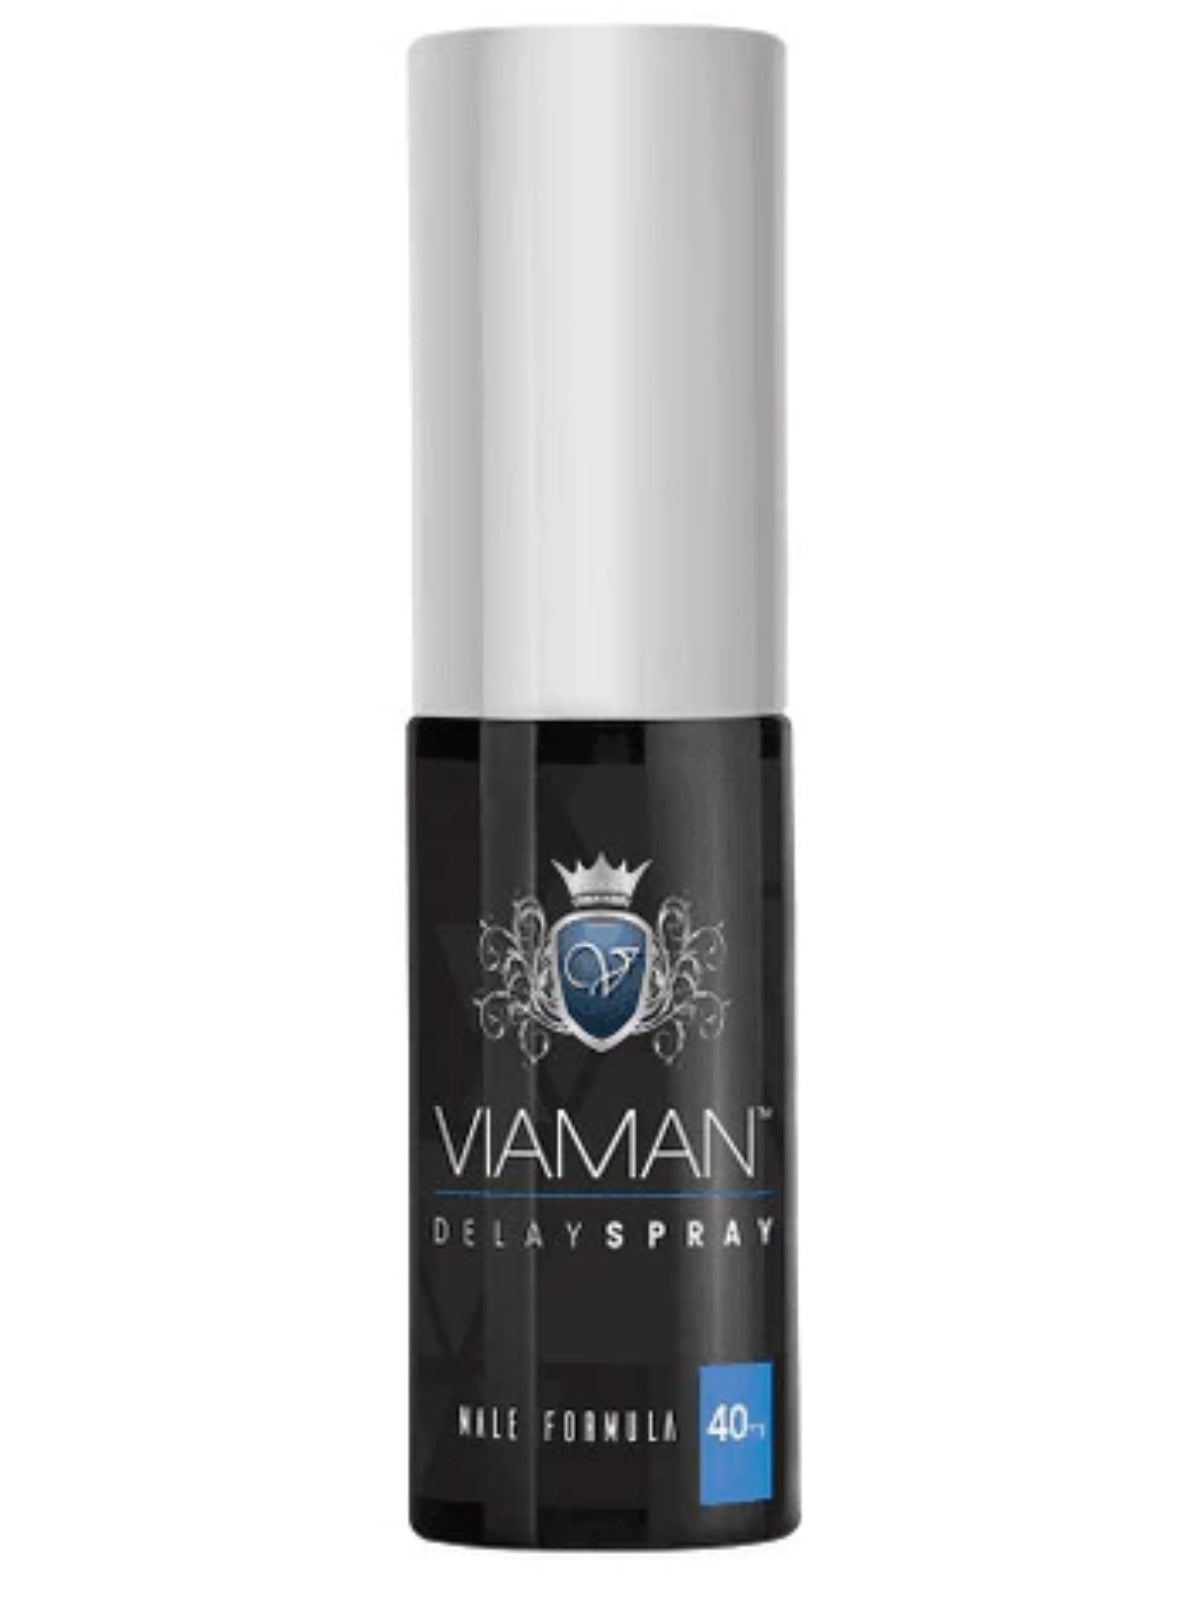 Viaman Delay Spray